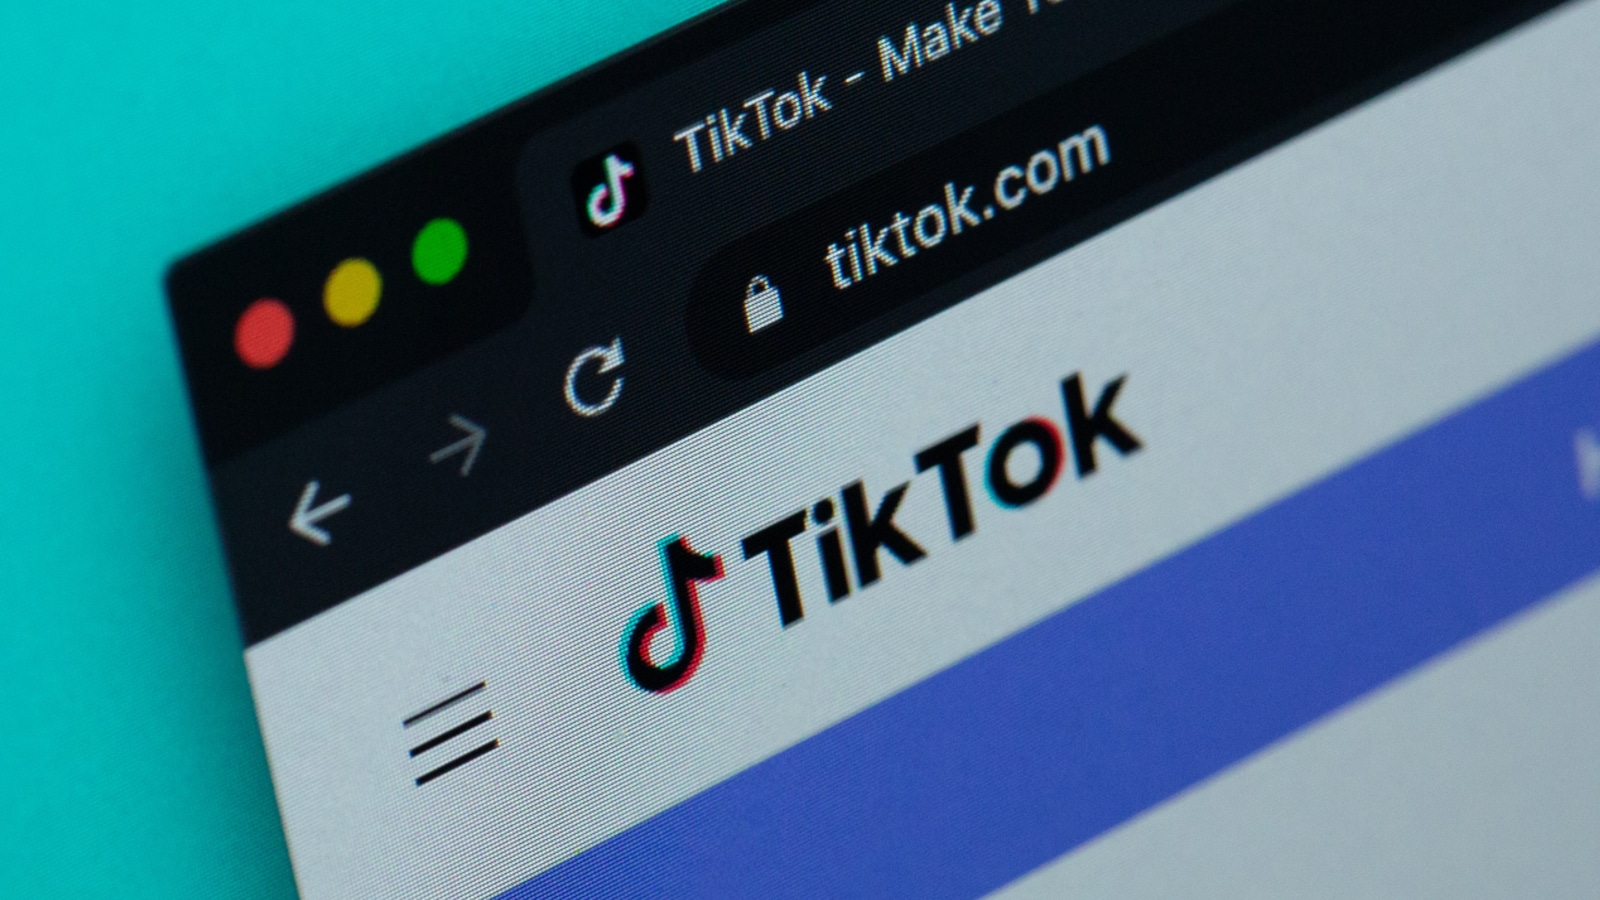 Tiktok -Website auf blauem Hintergrund